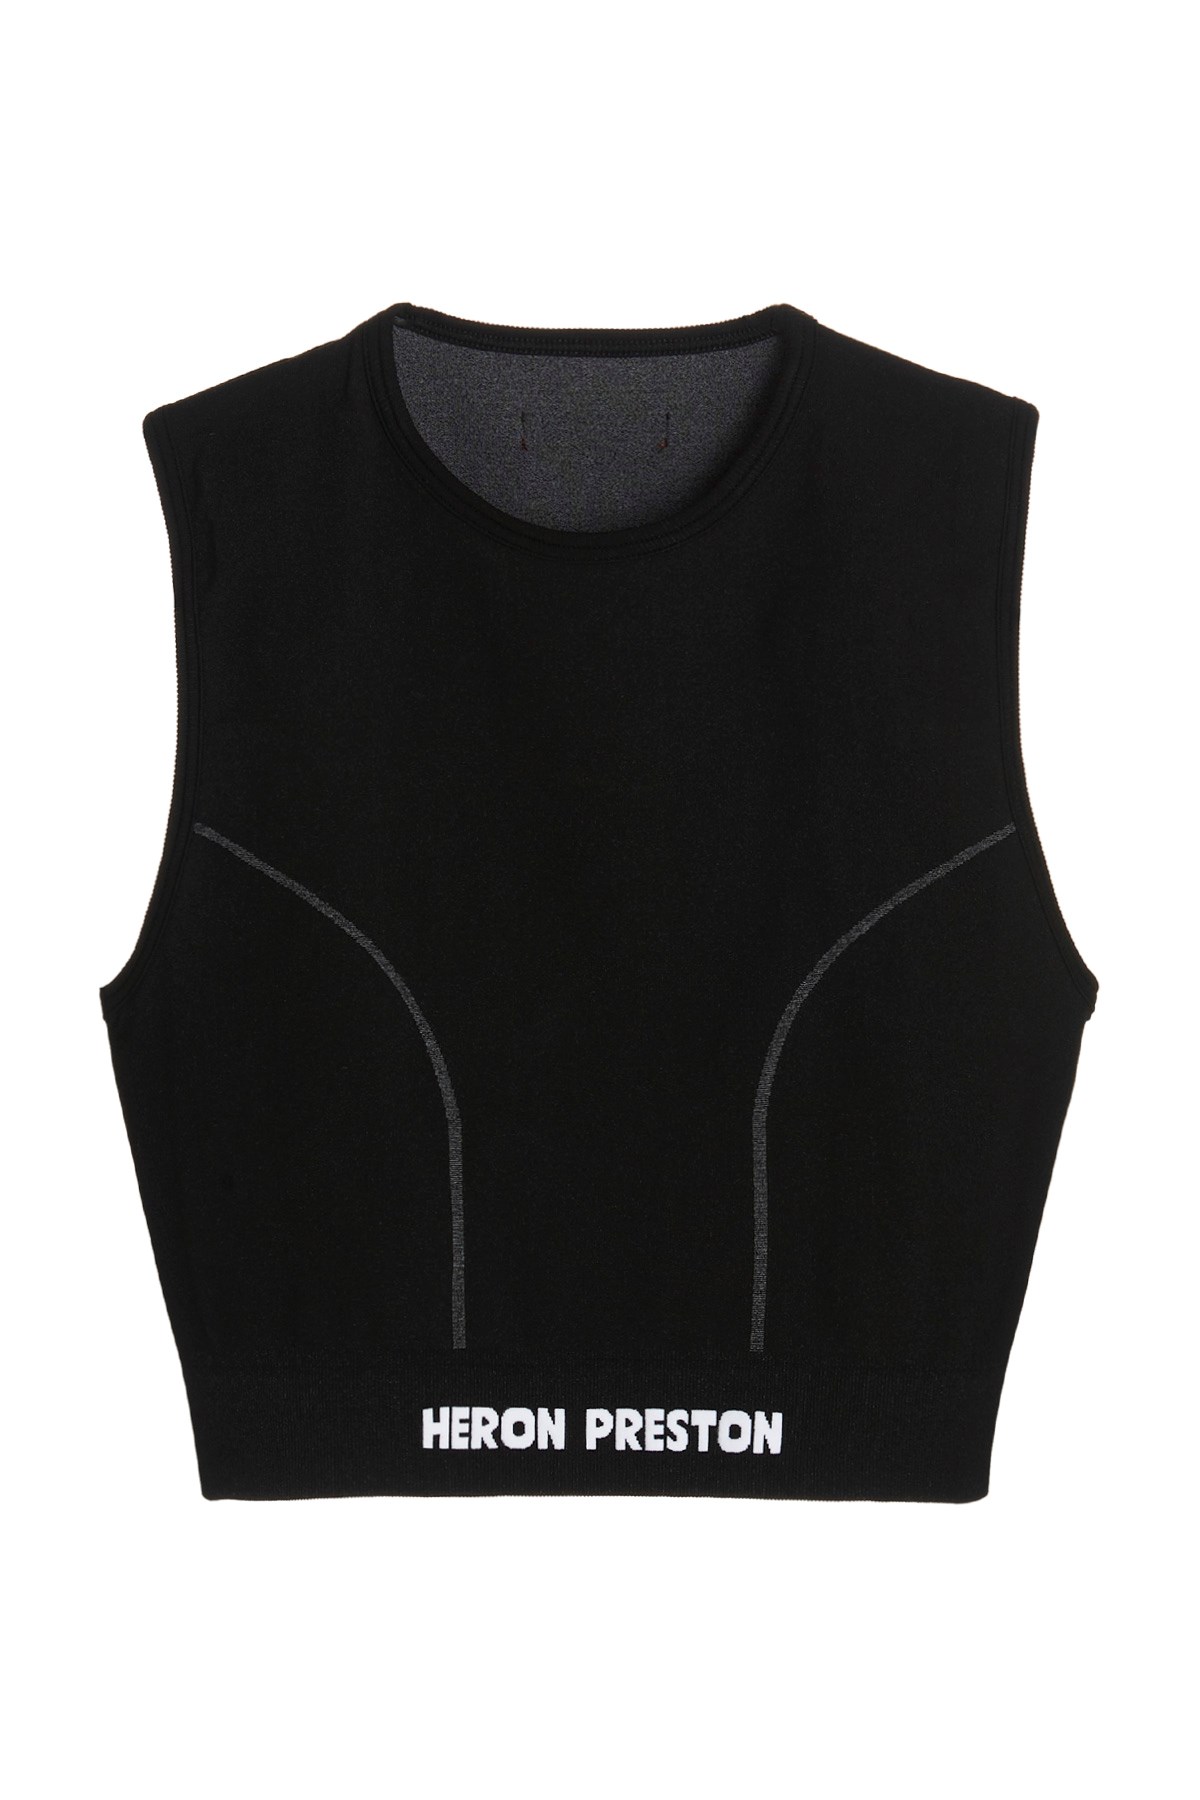 HERON PRESTON Top 'Active'